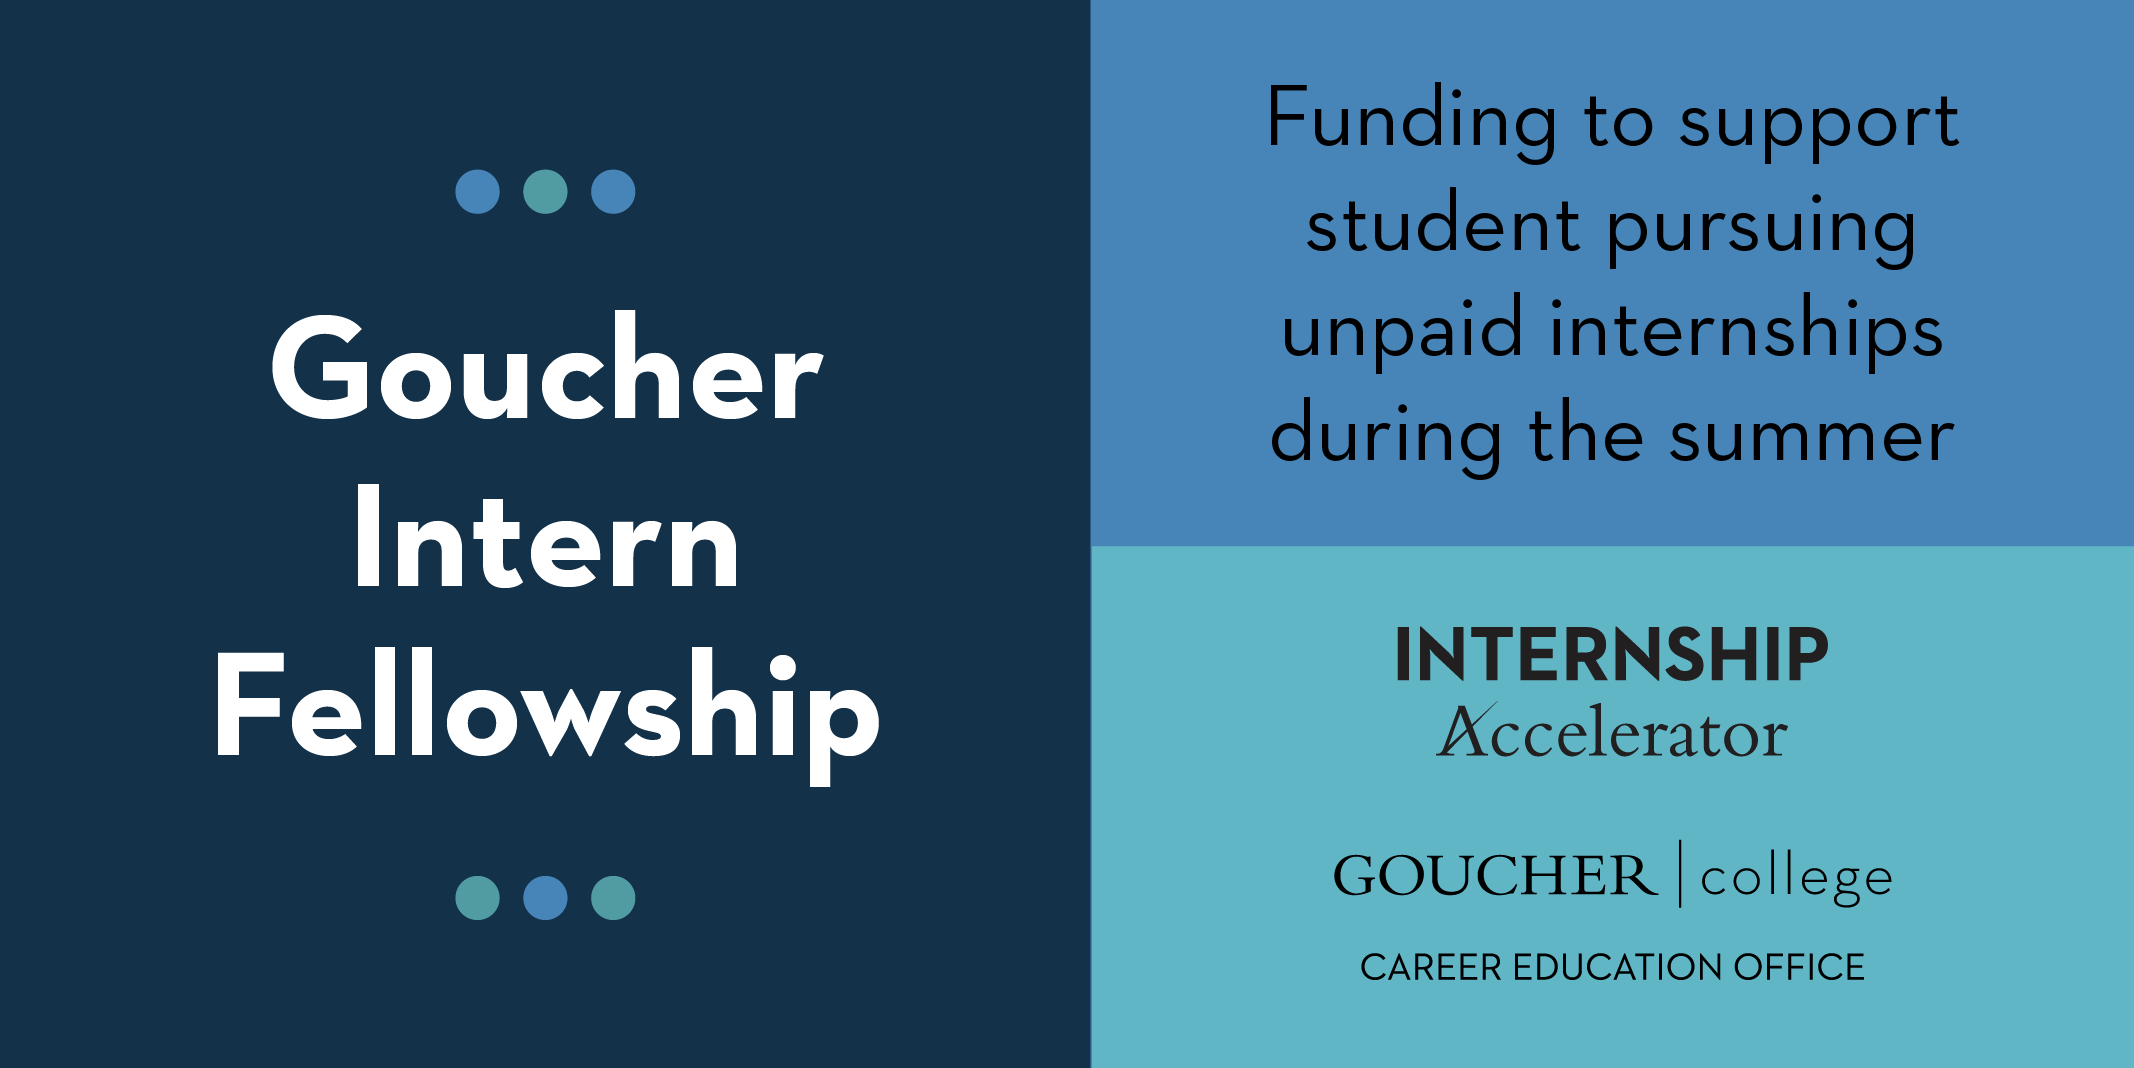 Goucher Intern Fellowship